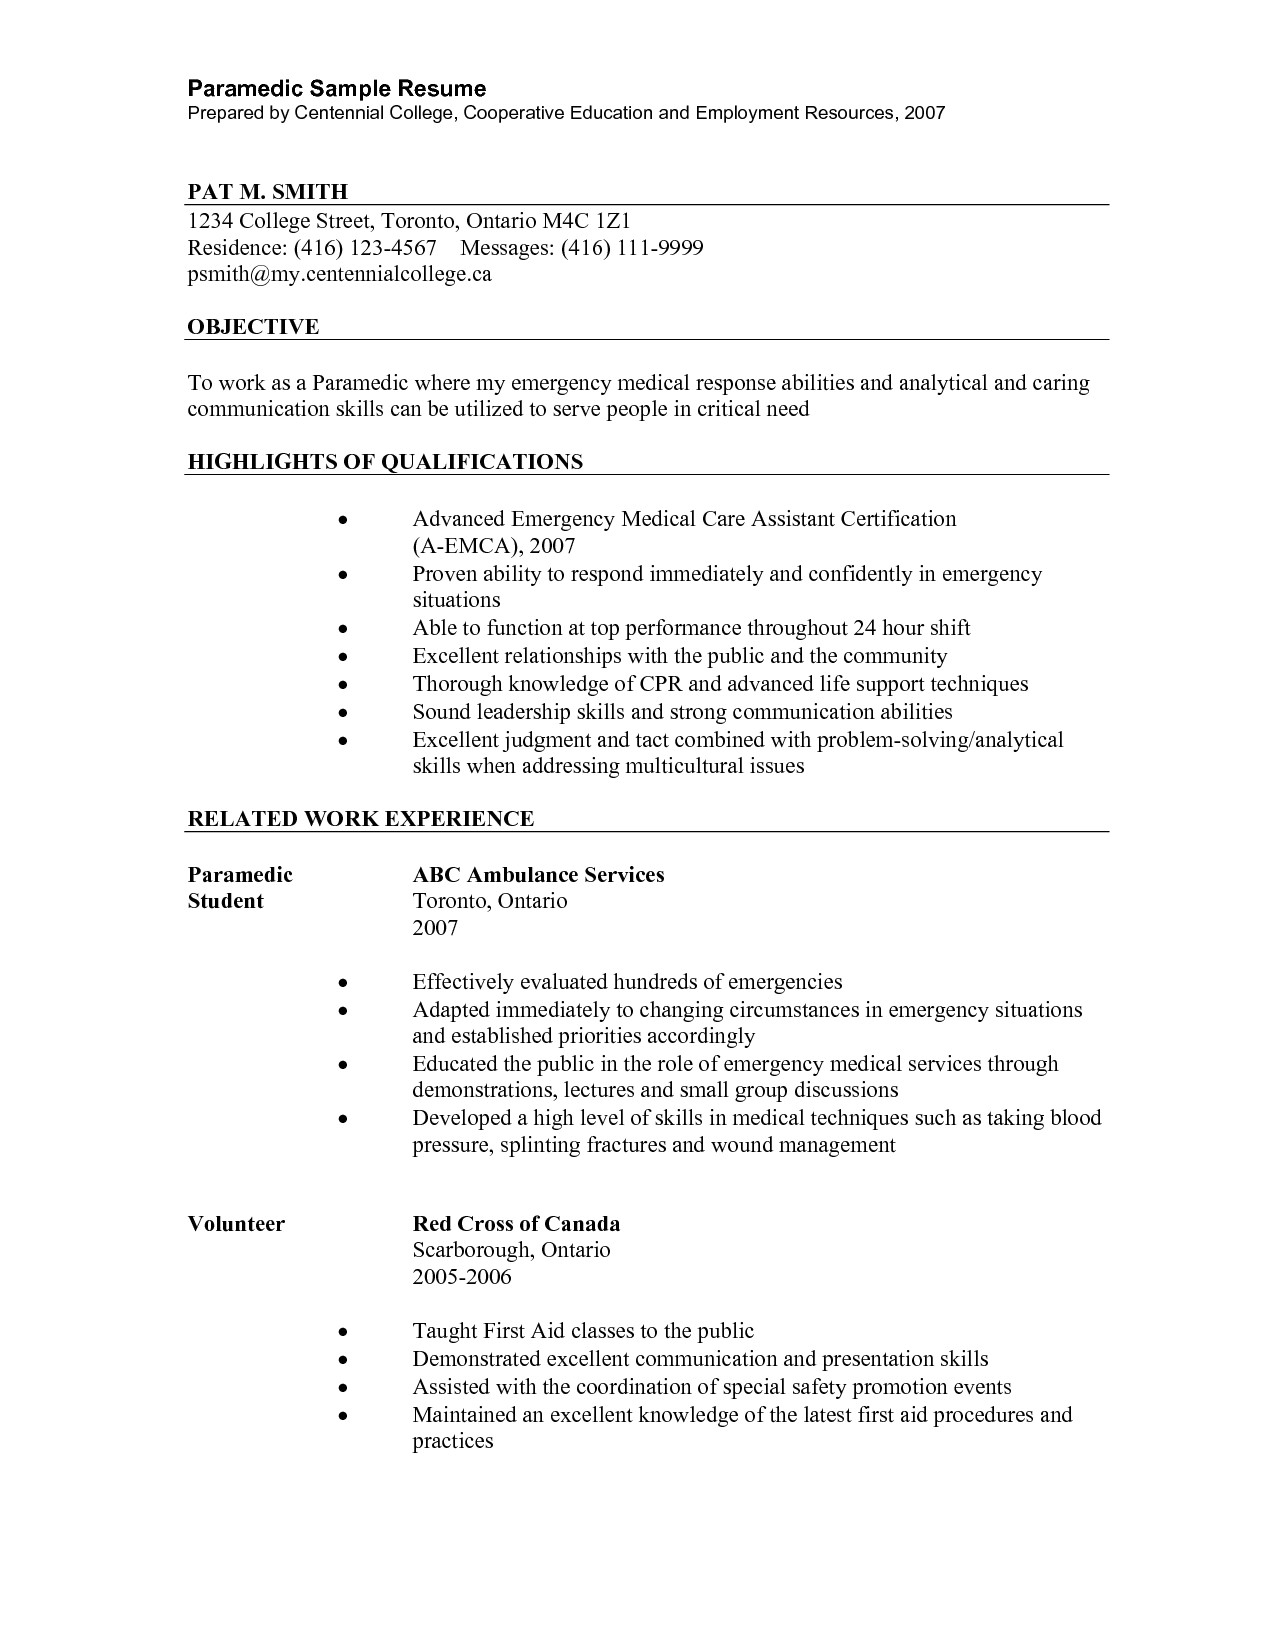 emt resume sample